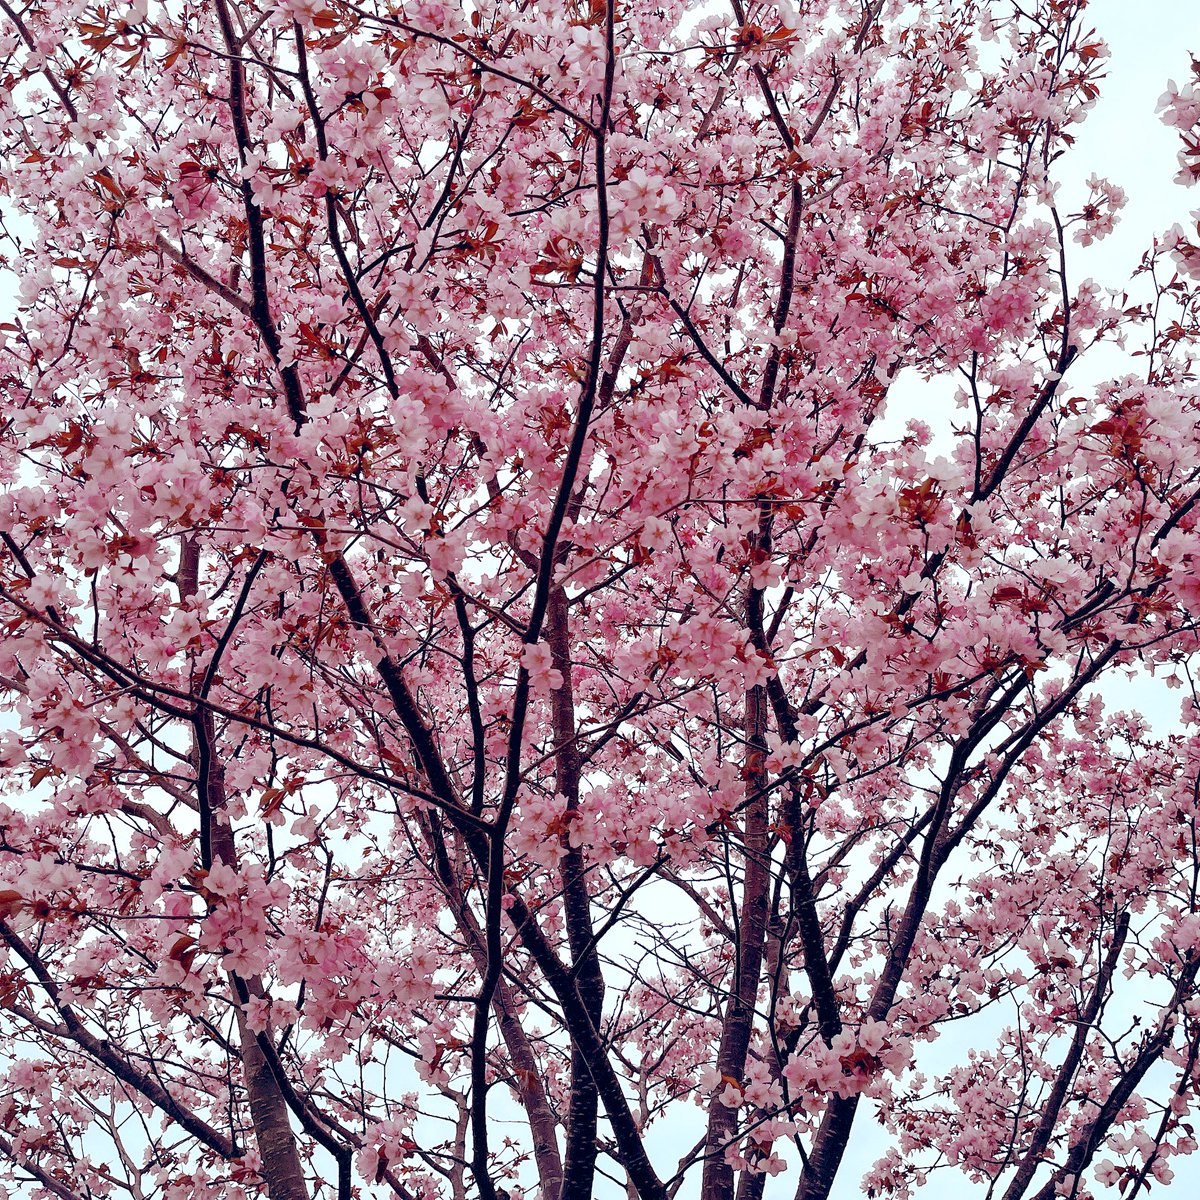 釧路八重🌸
来週は芝桜見に行くぞ🚗³₃